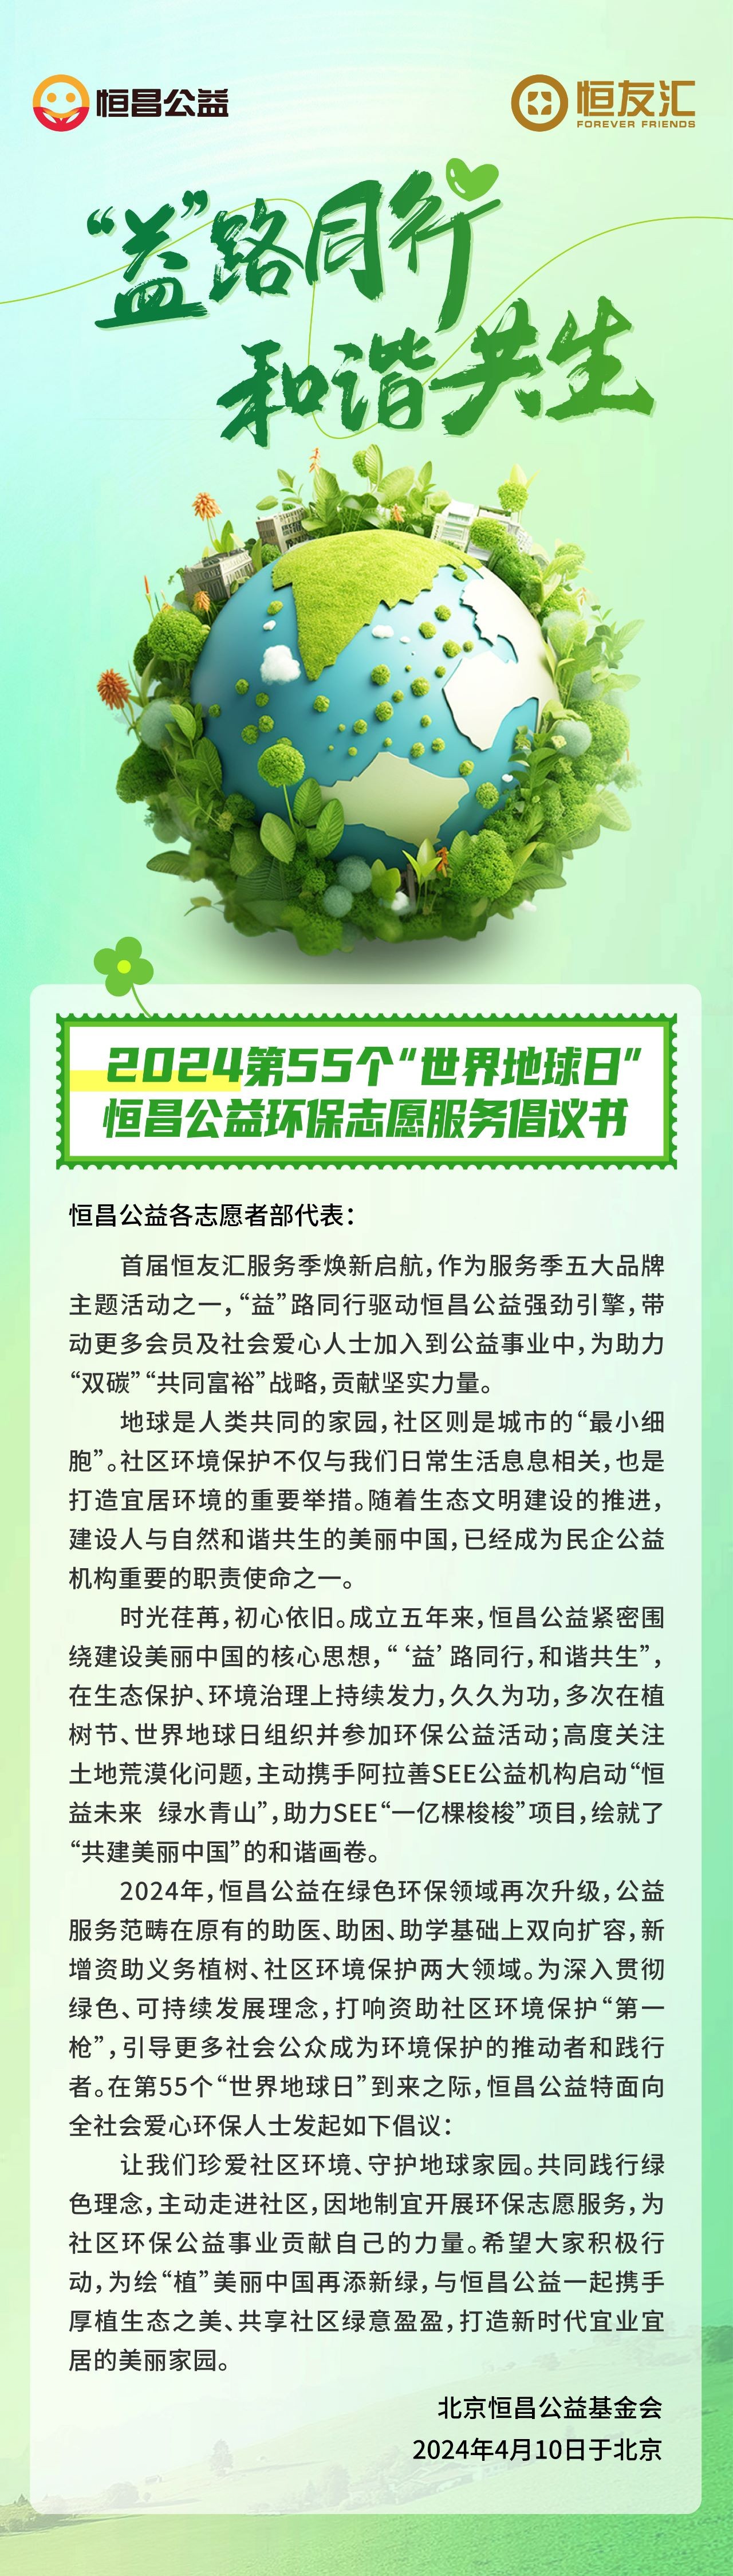 北京恒昌公益环保志愿服务倡议书